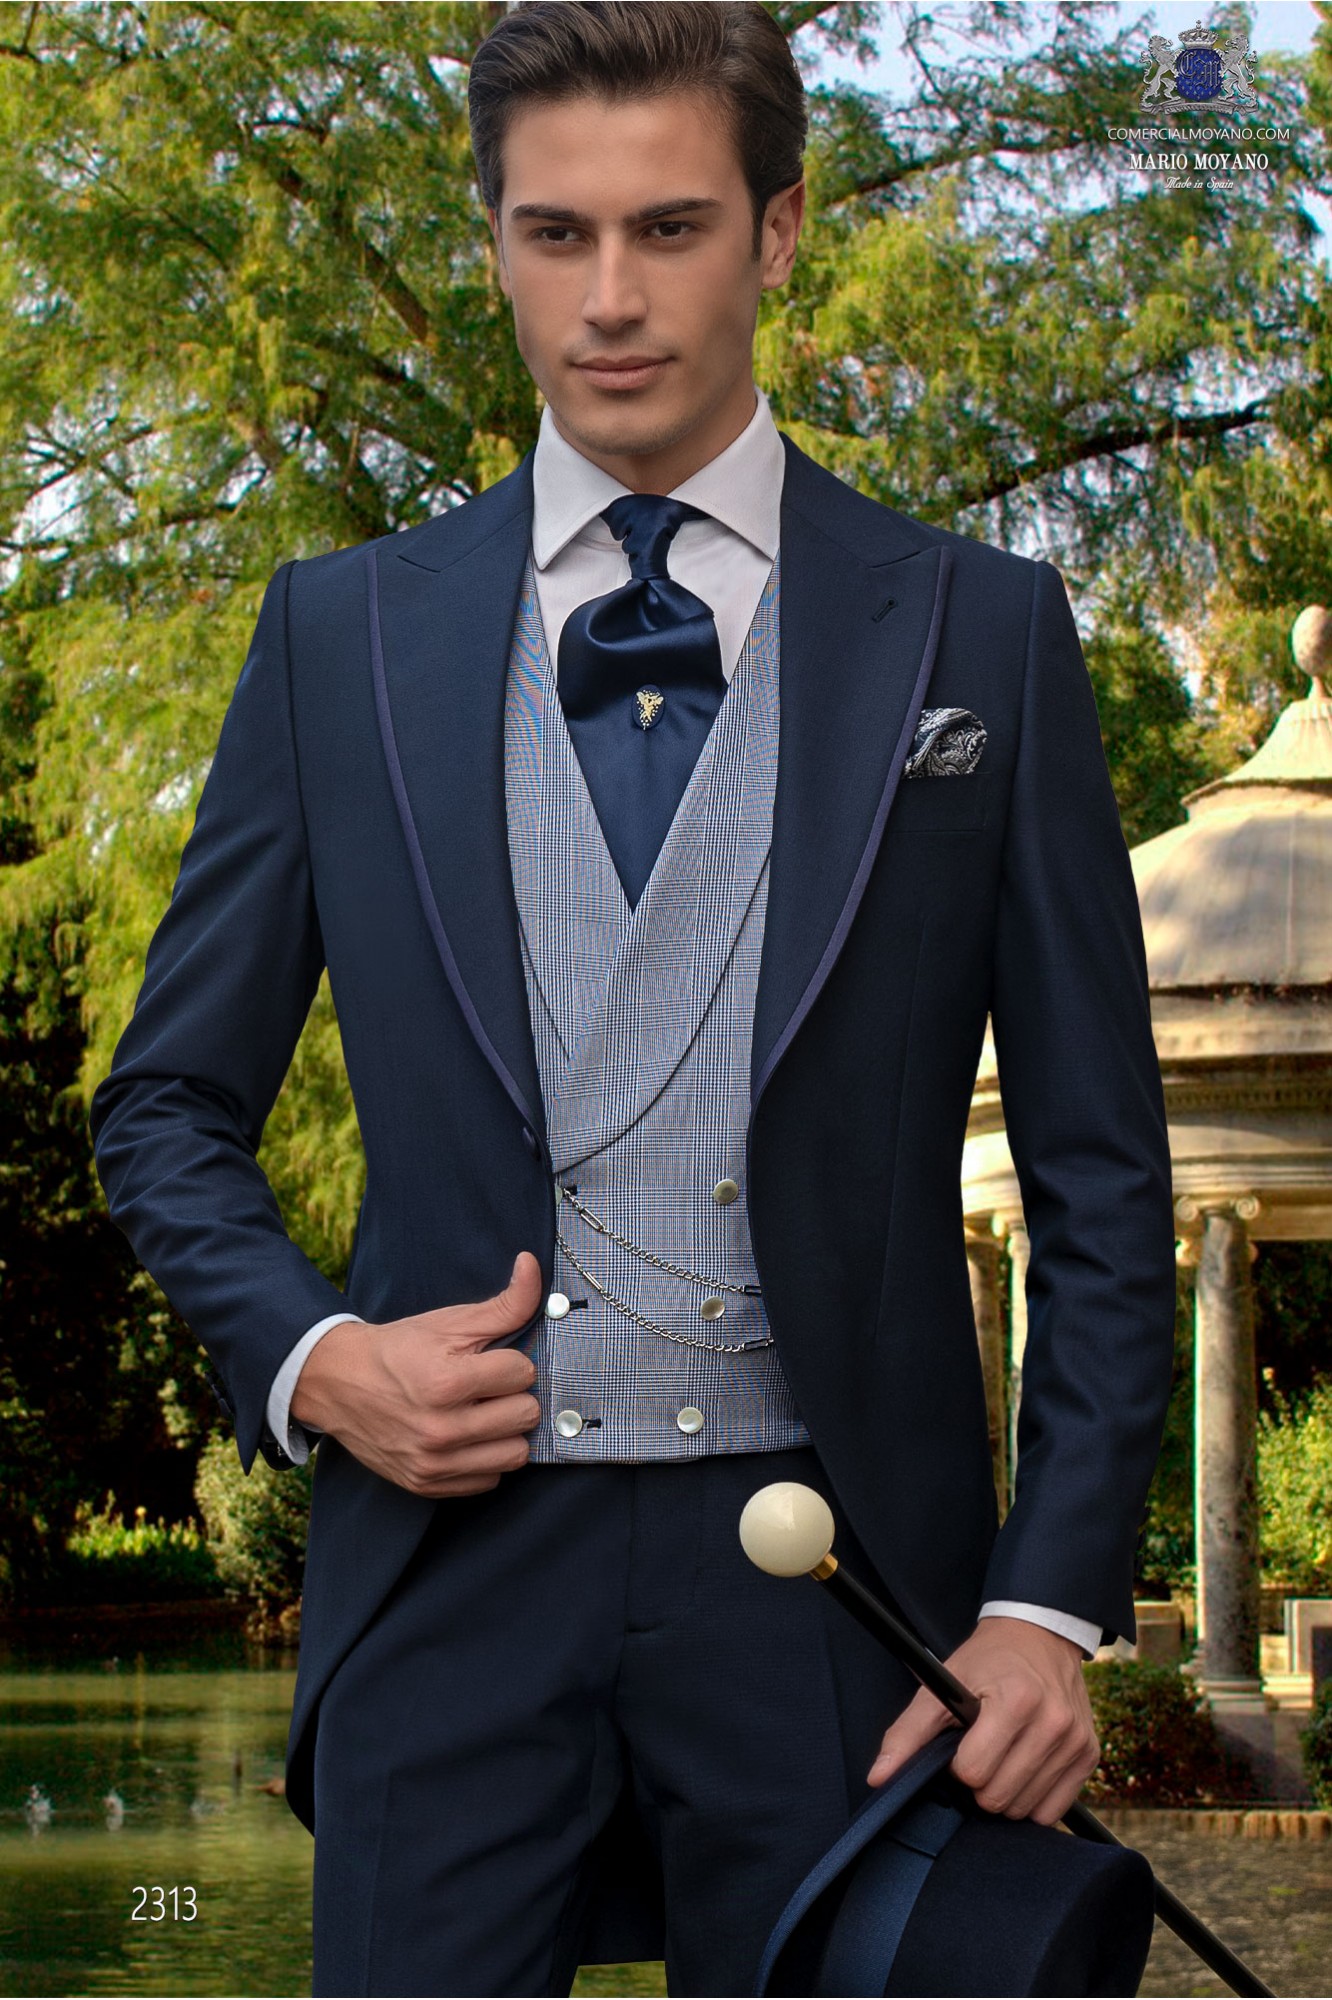 Chaqué de novio azul marino tejido lana alpaca modelo: 2313 Mario Moyano colección Gentleman